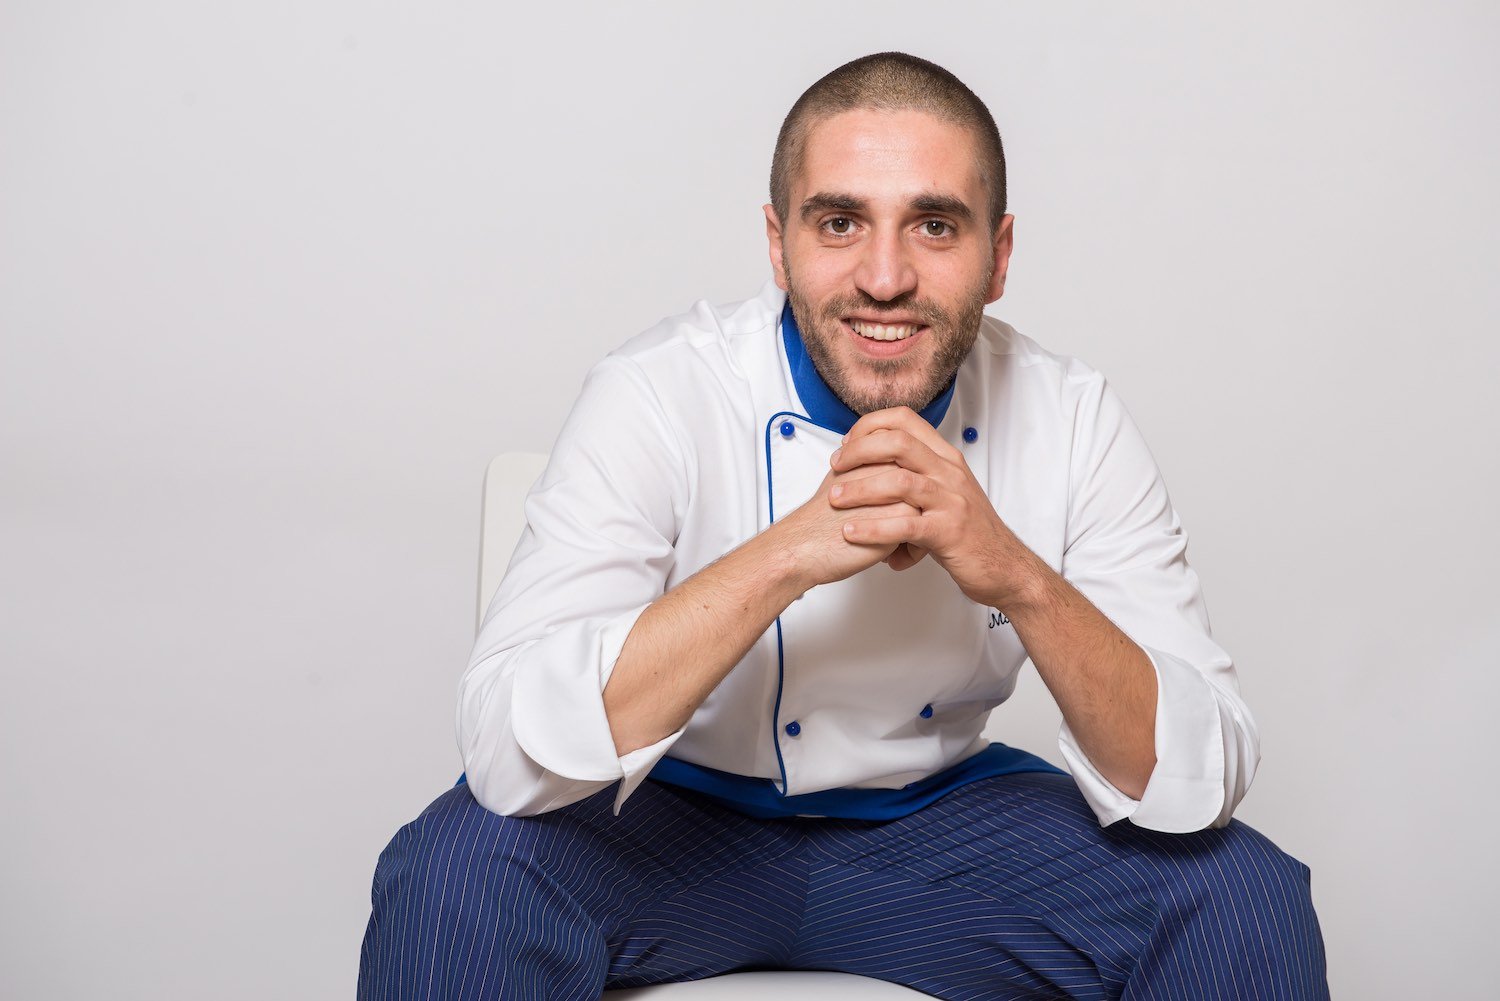 Marco Scaglione è uno dei primi chef di alto livello a proporre una cucina senza glutine con un occhio di riguardo a chi soffre di celiachia